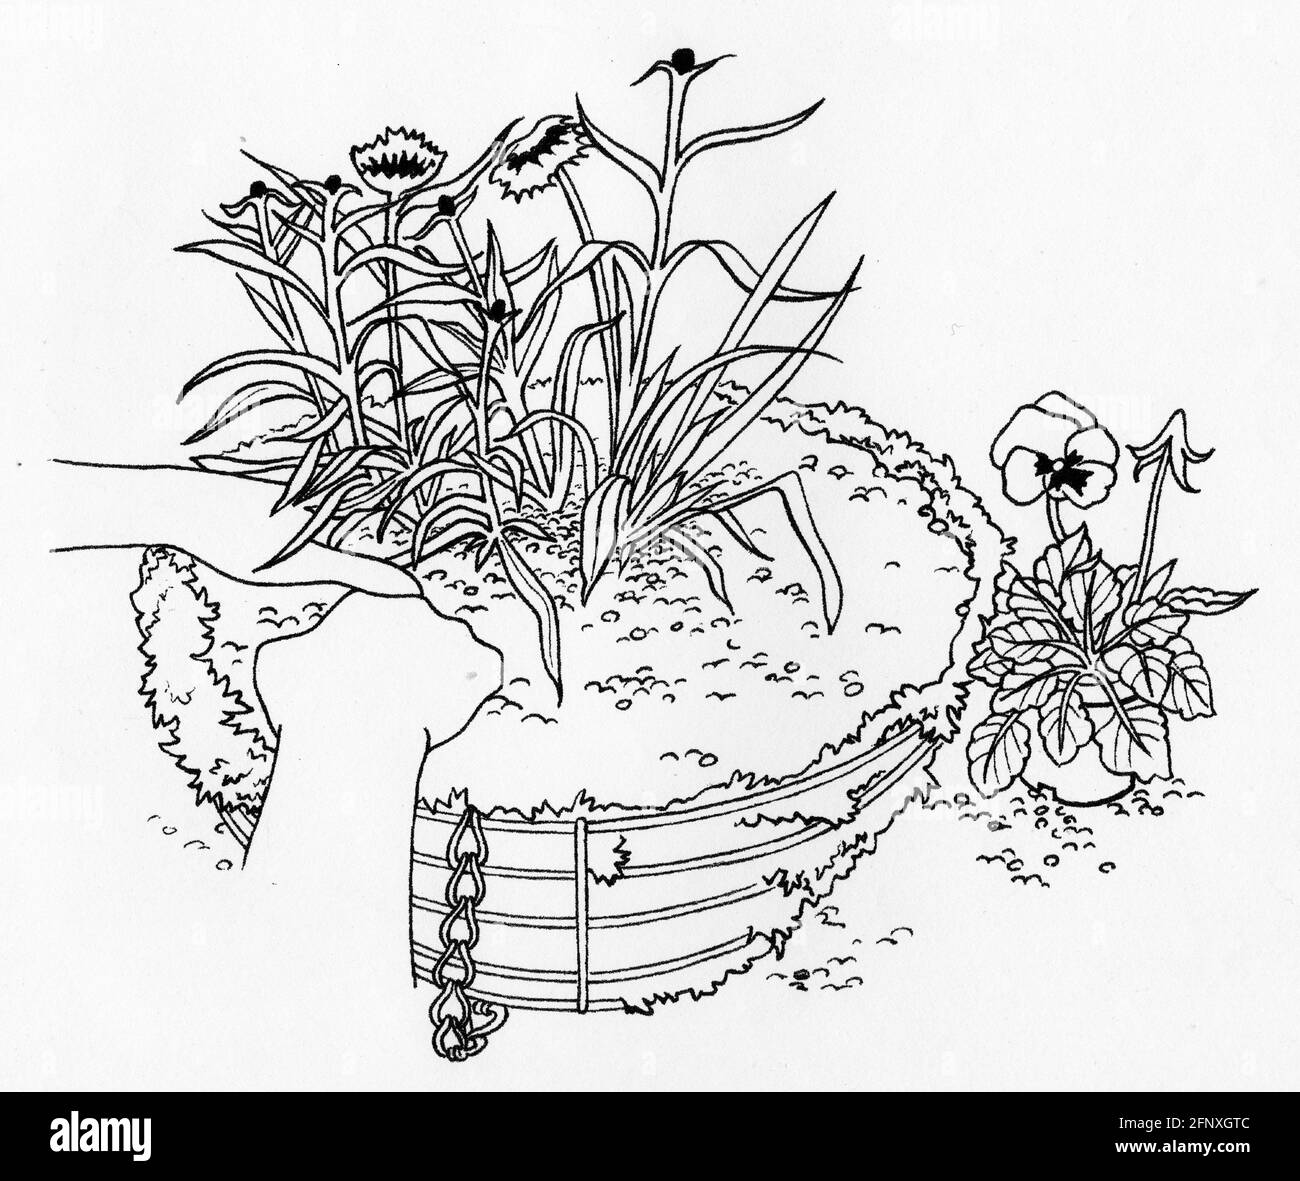 Dessin d'une personne plantant un panier suspendu doté d'une doublure en mousse de sphagnum et de jeunes plantes Banque D'Images